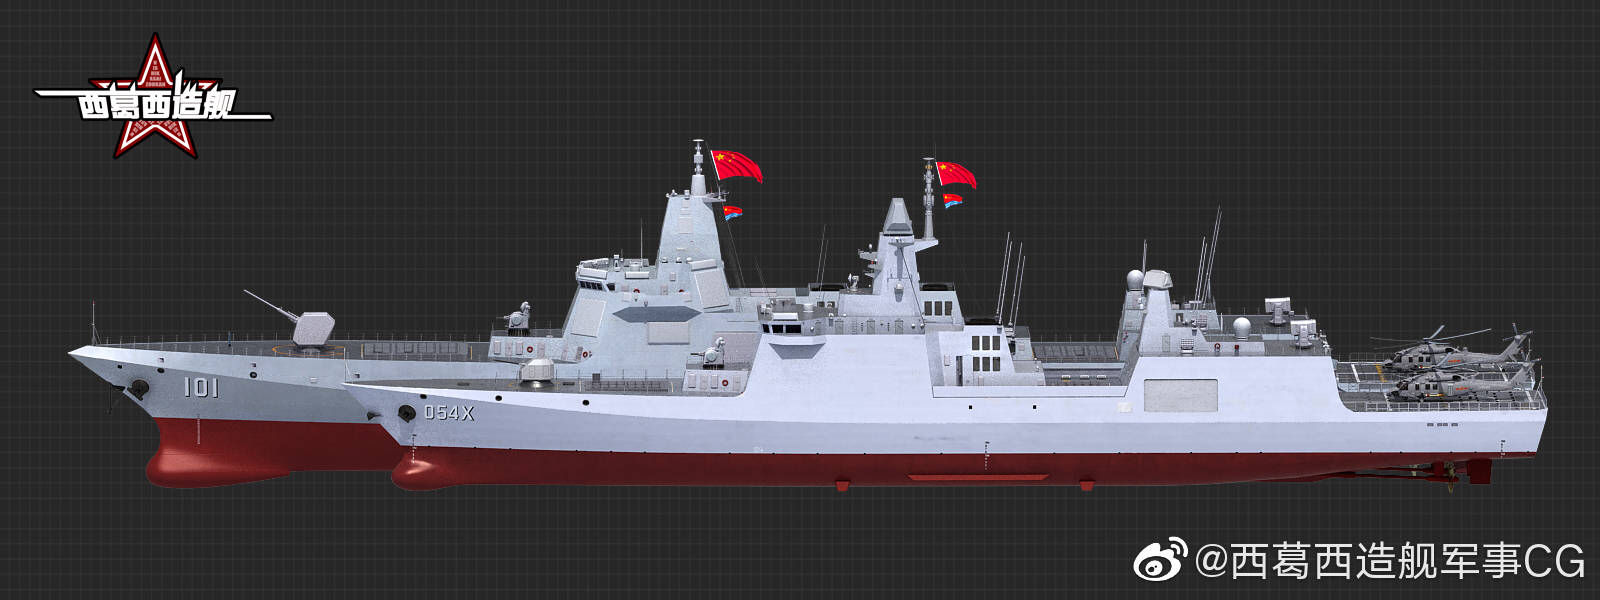 054b054x型护卫舰外形预测